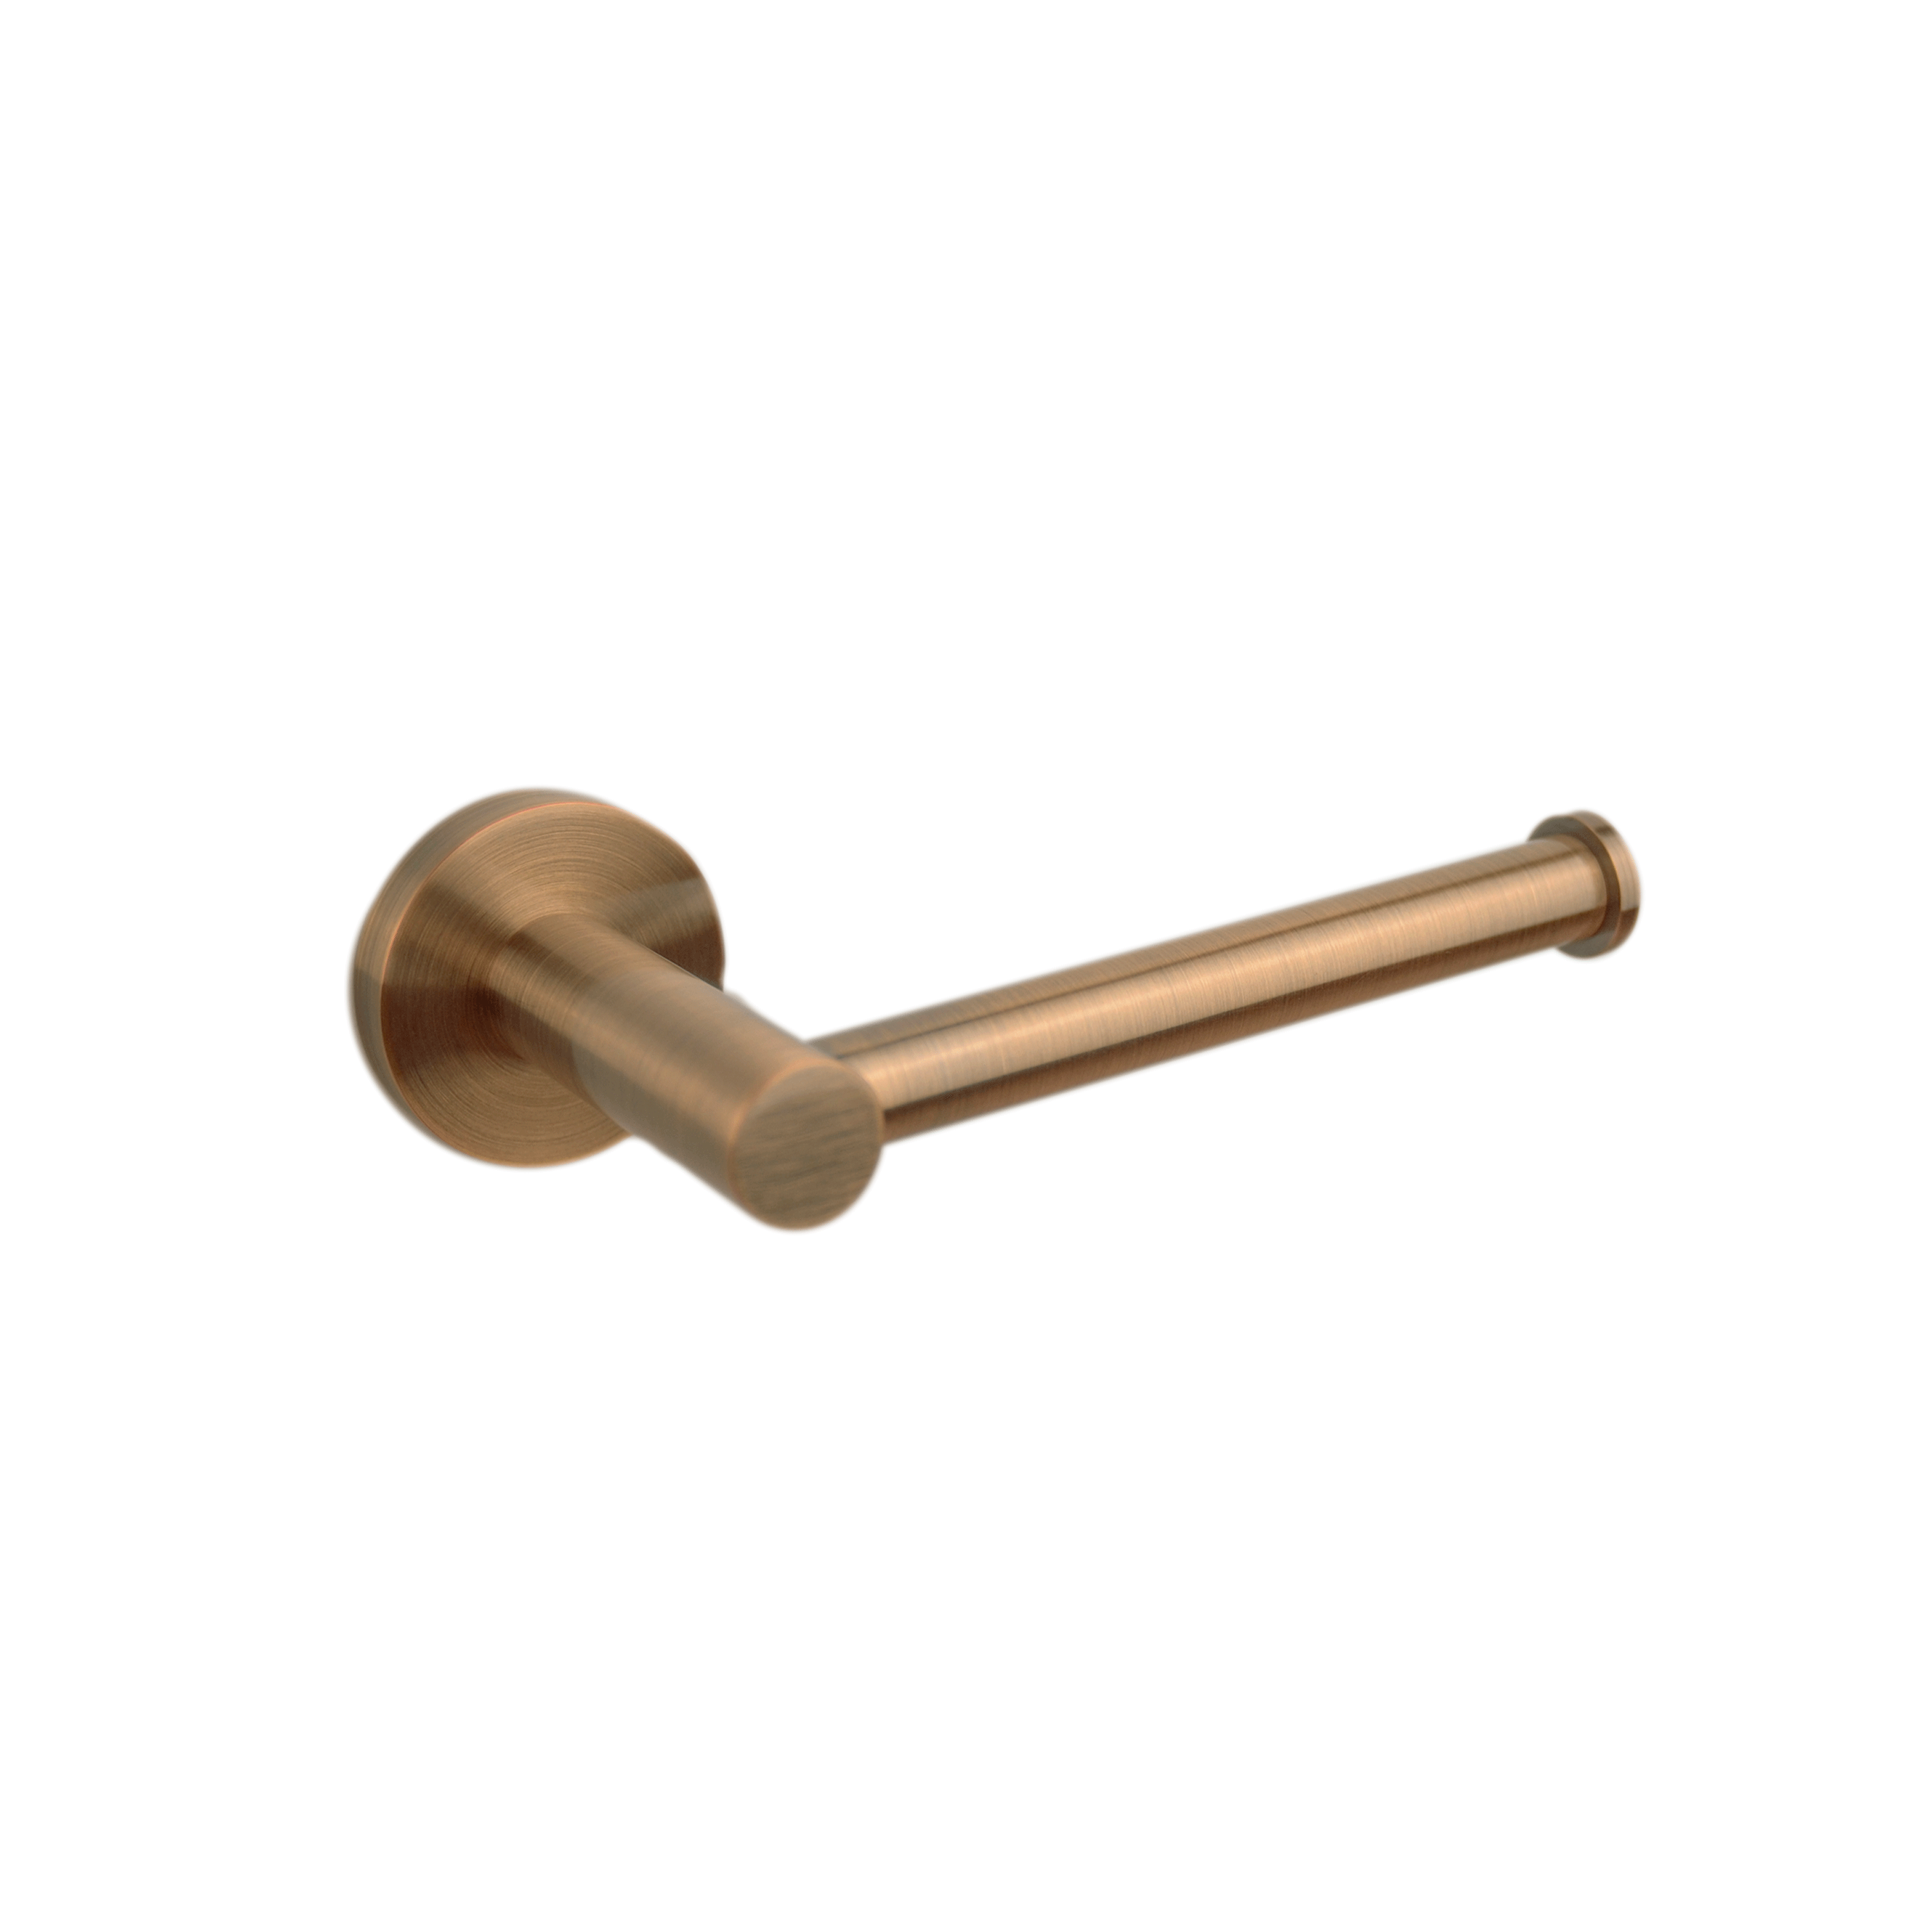 Cali Toilet Roll Holder – Brushed Copper